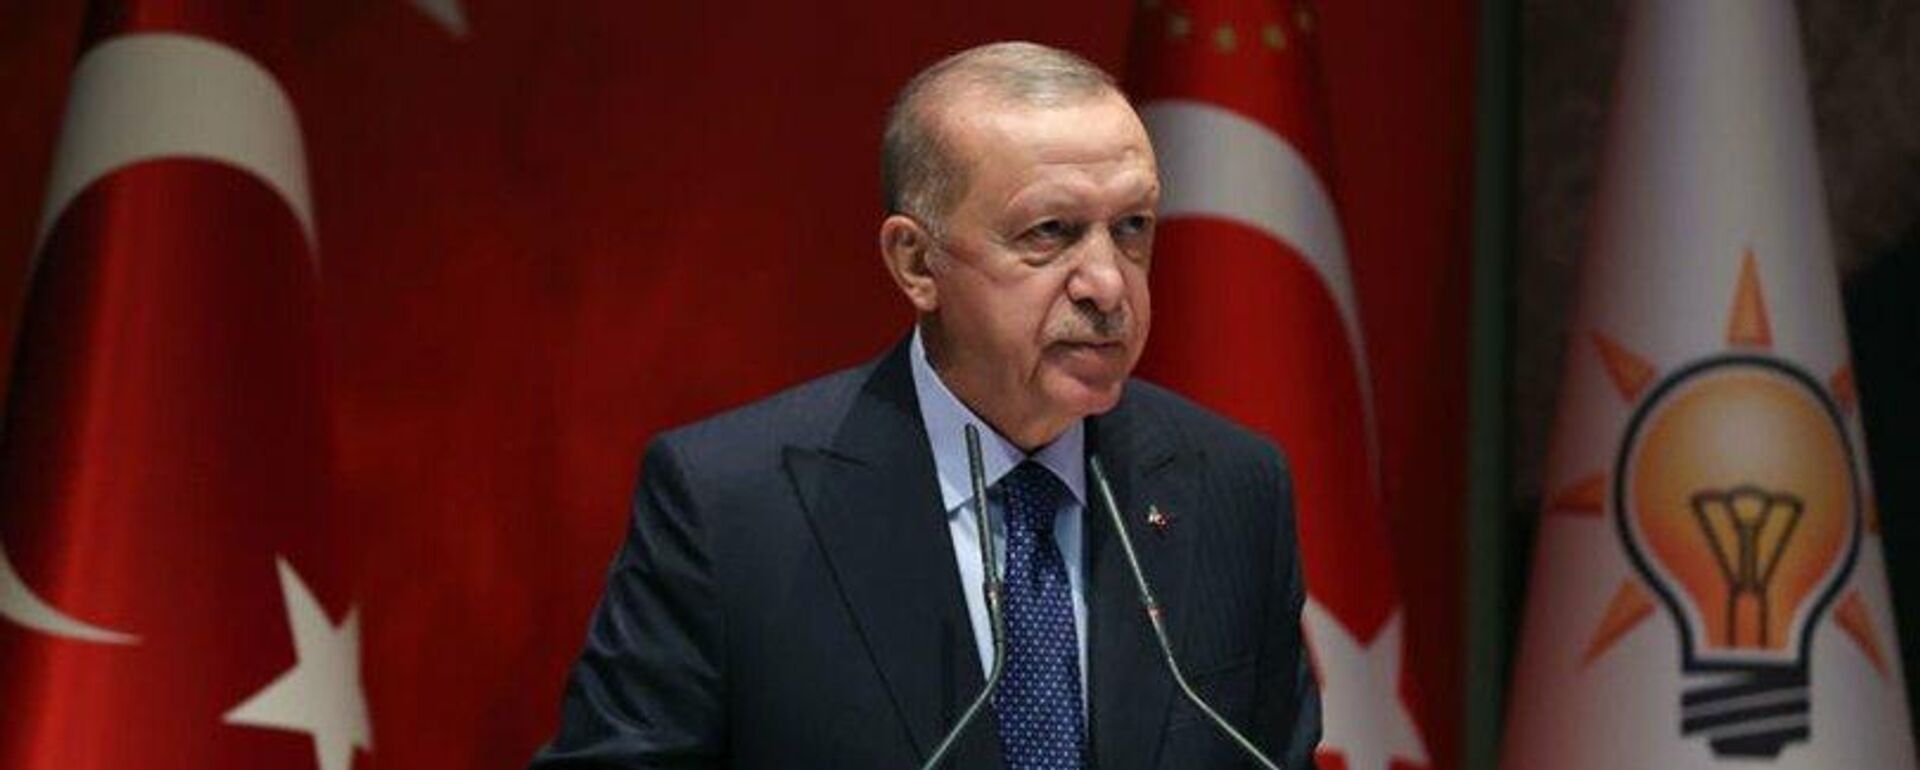 Cumhurbaşkanı Erdoğan: 2023 seçimleri, ülkemiz ve milletimiz için bir dönüm noktası olacaktır - Sputnik Türkiye, 1920, 24.02.2022